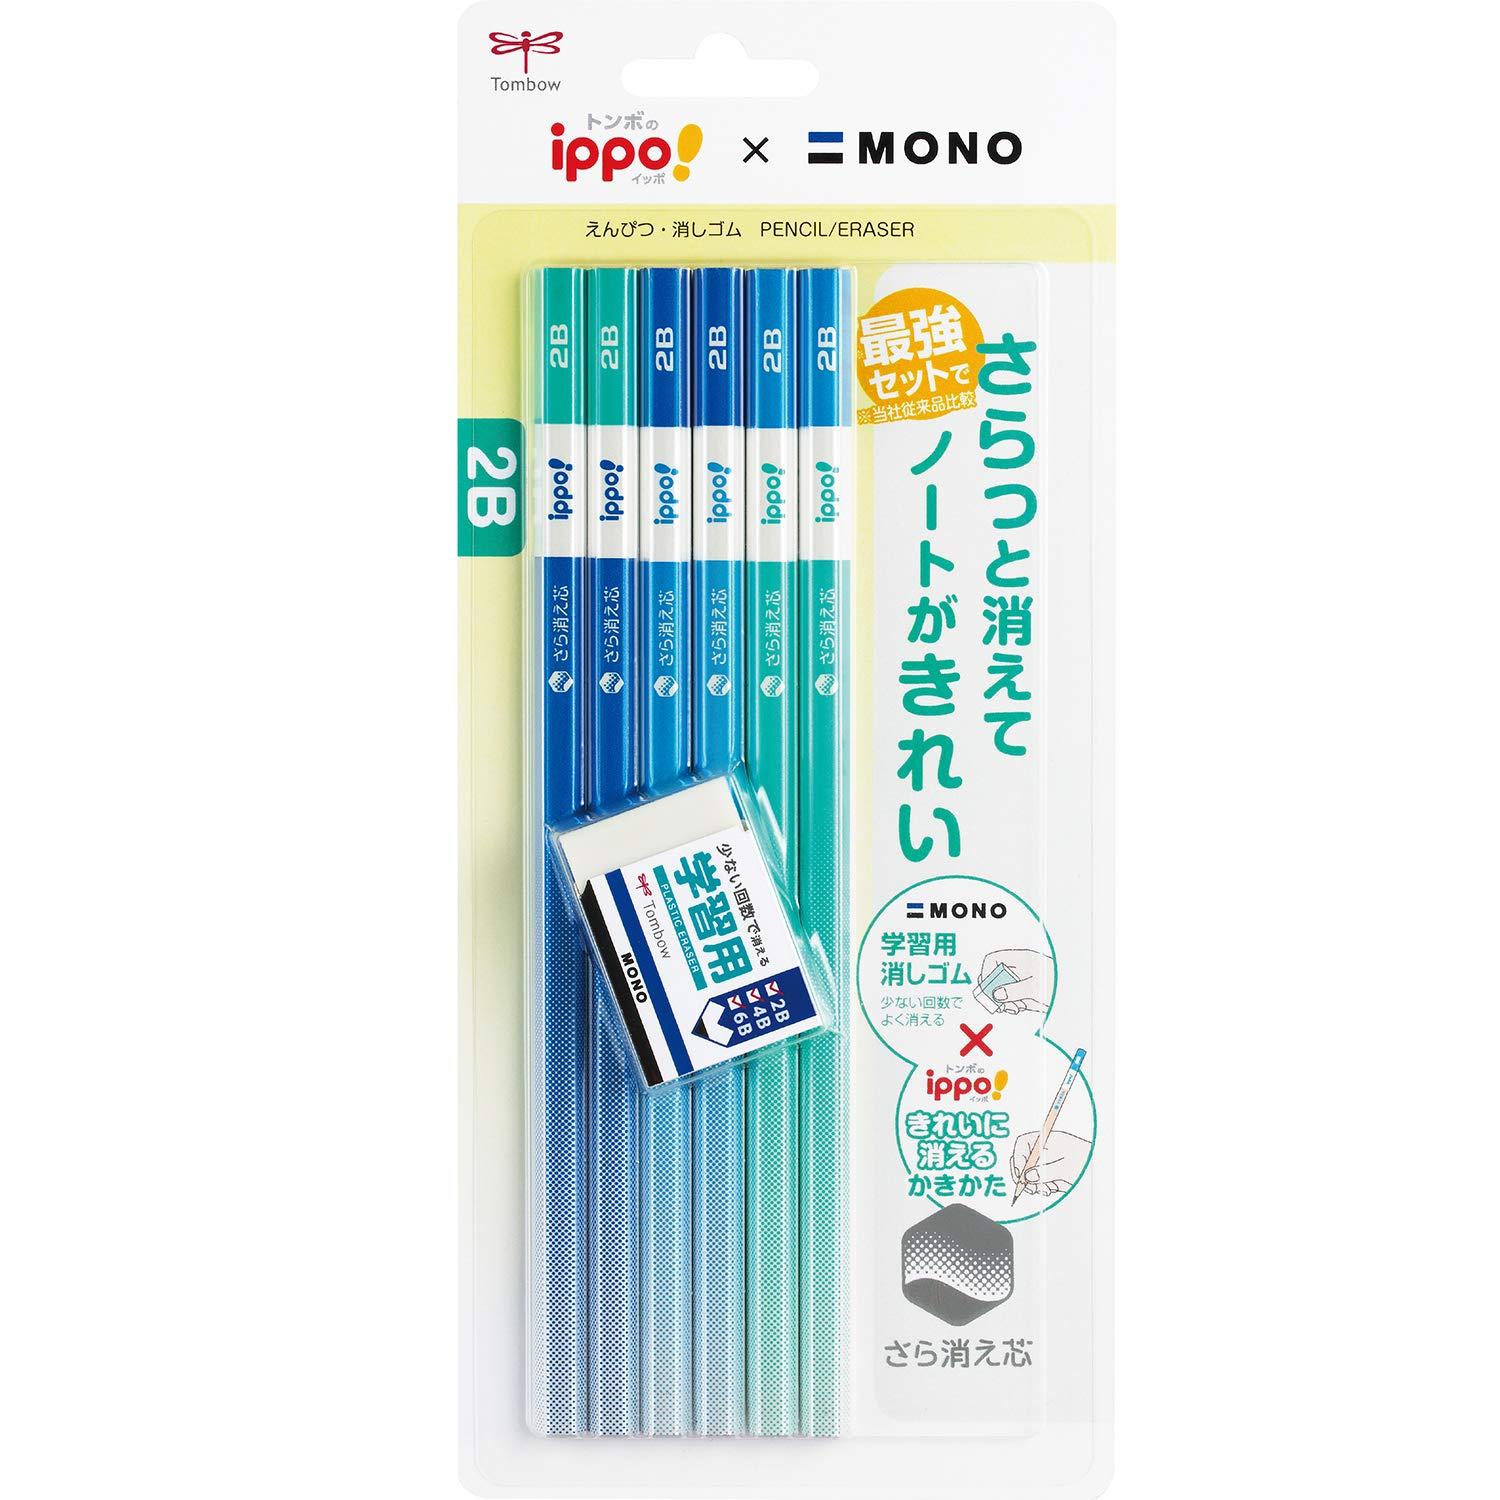 トンボ鉛筆 鉛筆 ippo! きれいに消えるかきかたえんぴつ 2B 6本+モノ学習用消しゴム ブルー PPB-711A